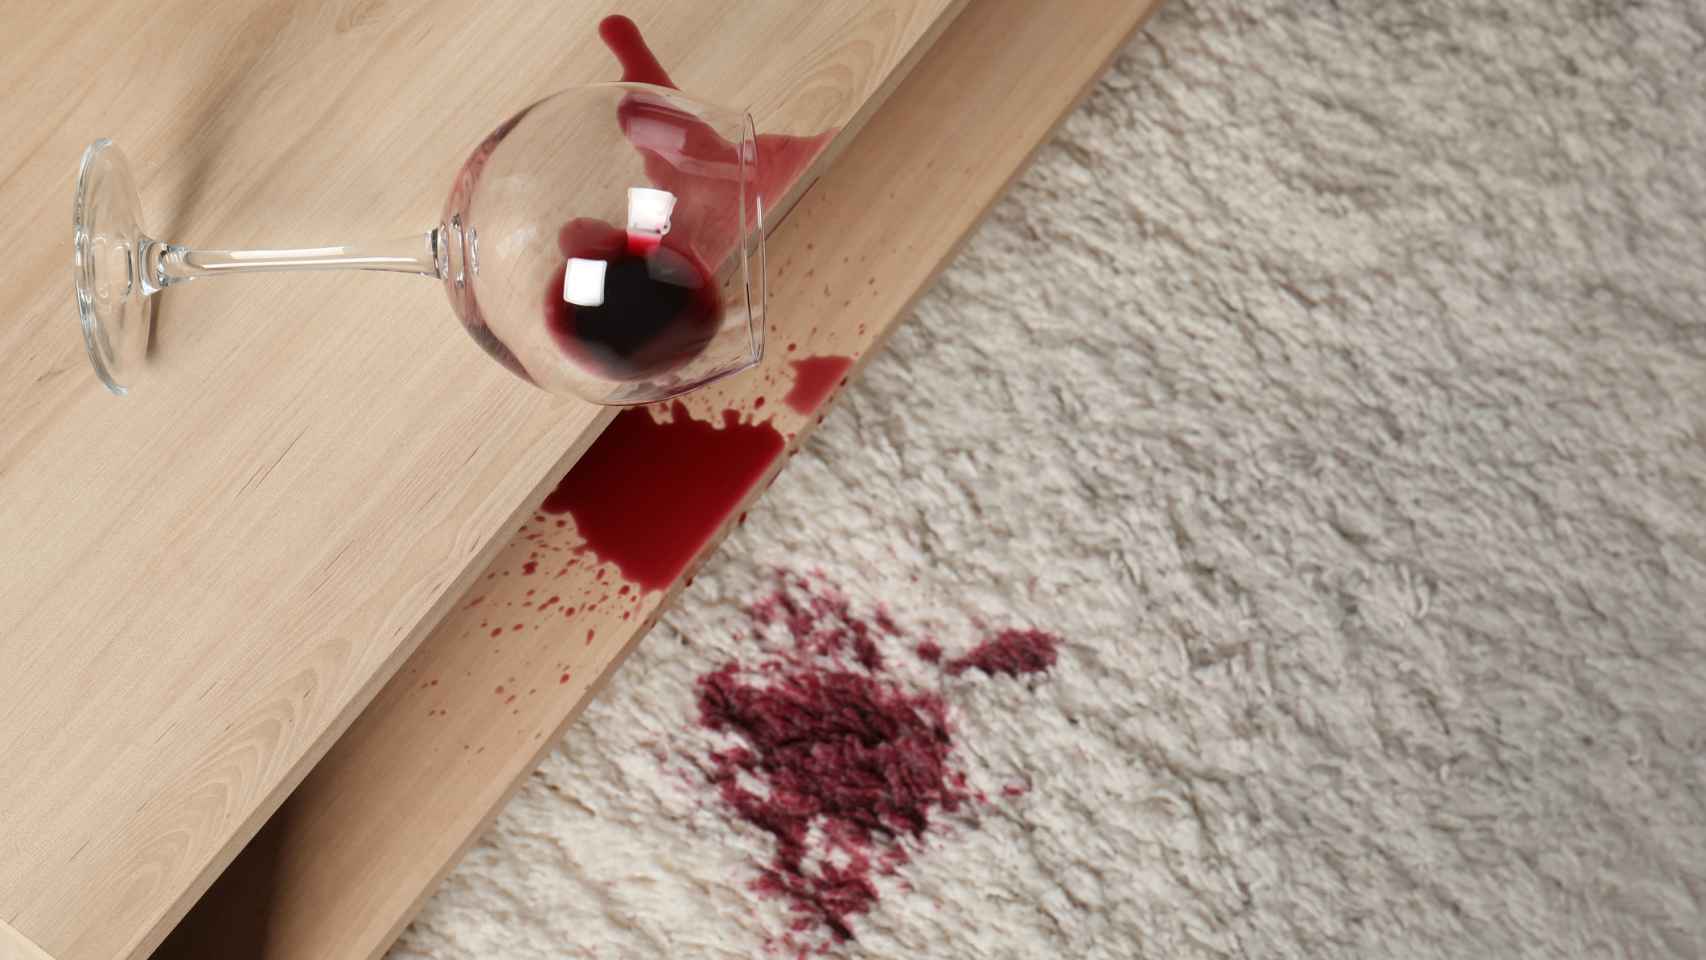 Una copa de vino derramada sobre una alfombra.